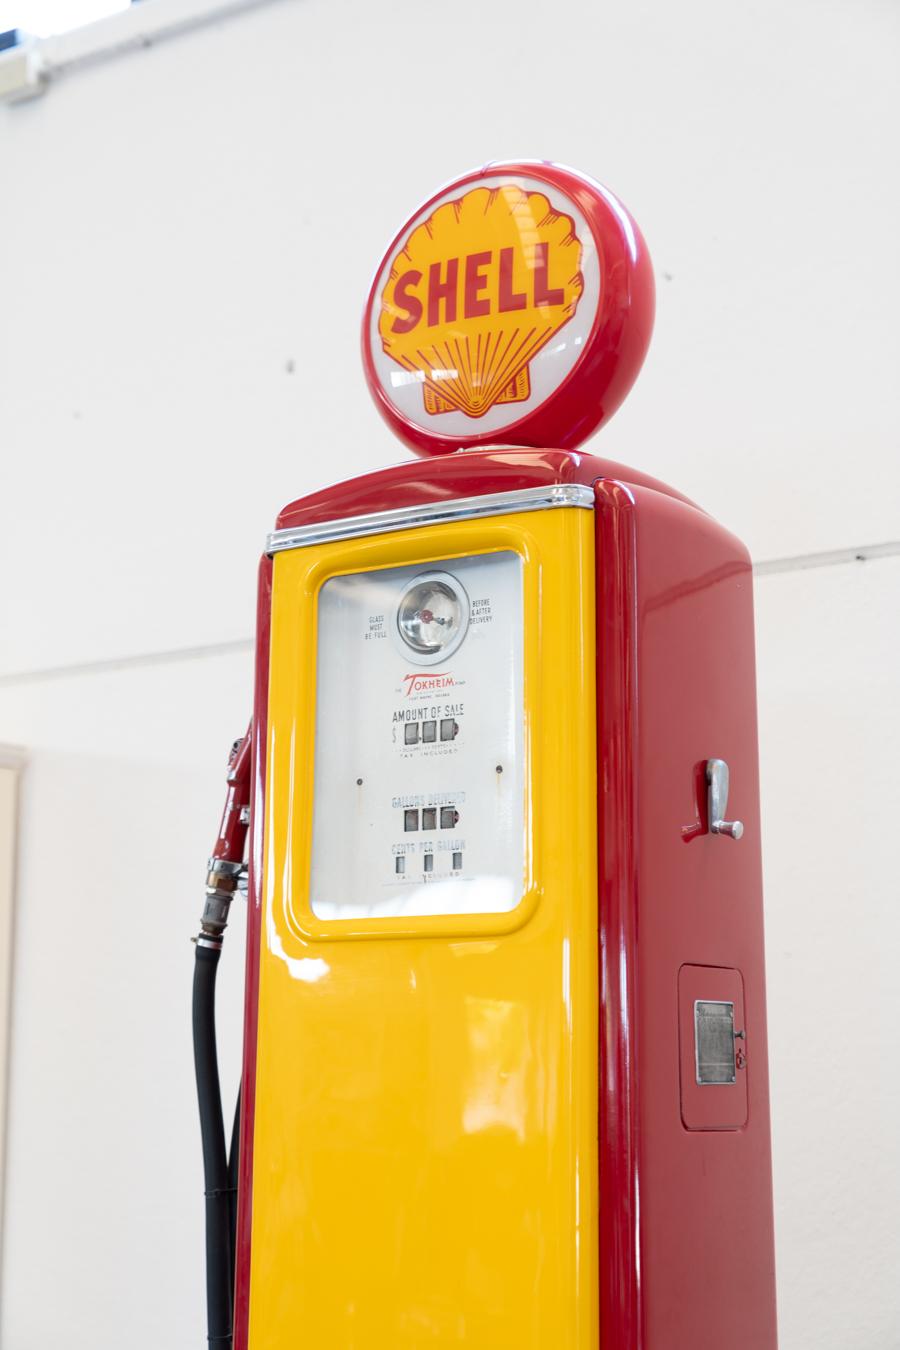 Distributore benzina SHELL americano anni 50/60
Il coperchio rotondo in cima SHELL si illumina
Stile
Vintage
Periodo del design
1950 - 1959
Periodo di produzione
1950 - 1959
Anno di produzione
1950
Paese di produzione
Italia
Materiale
Ferro, Vetro,